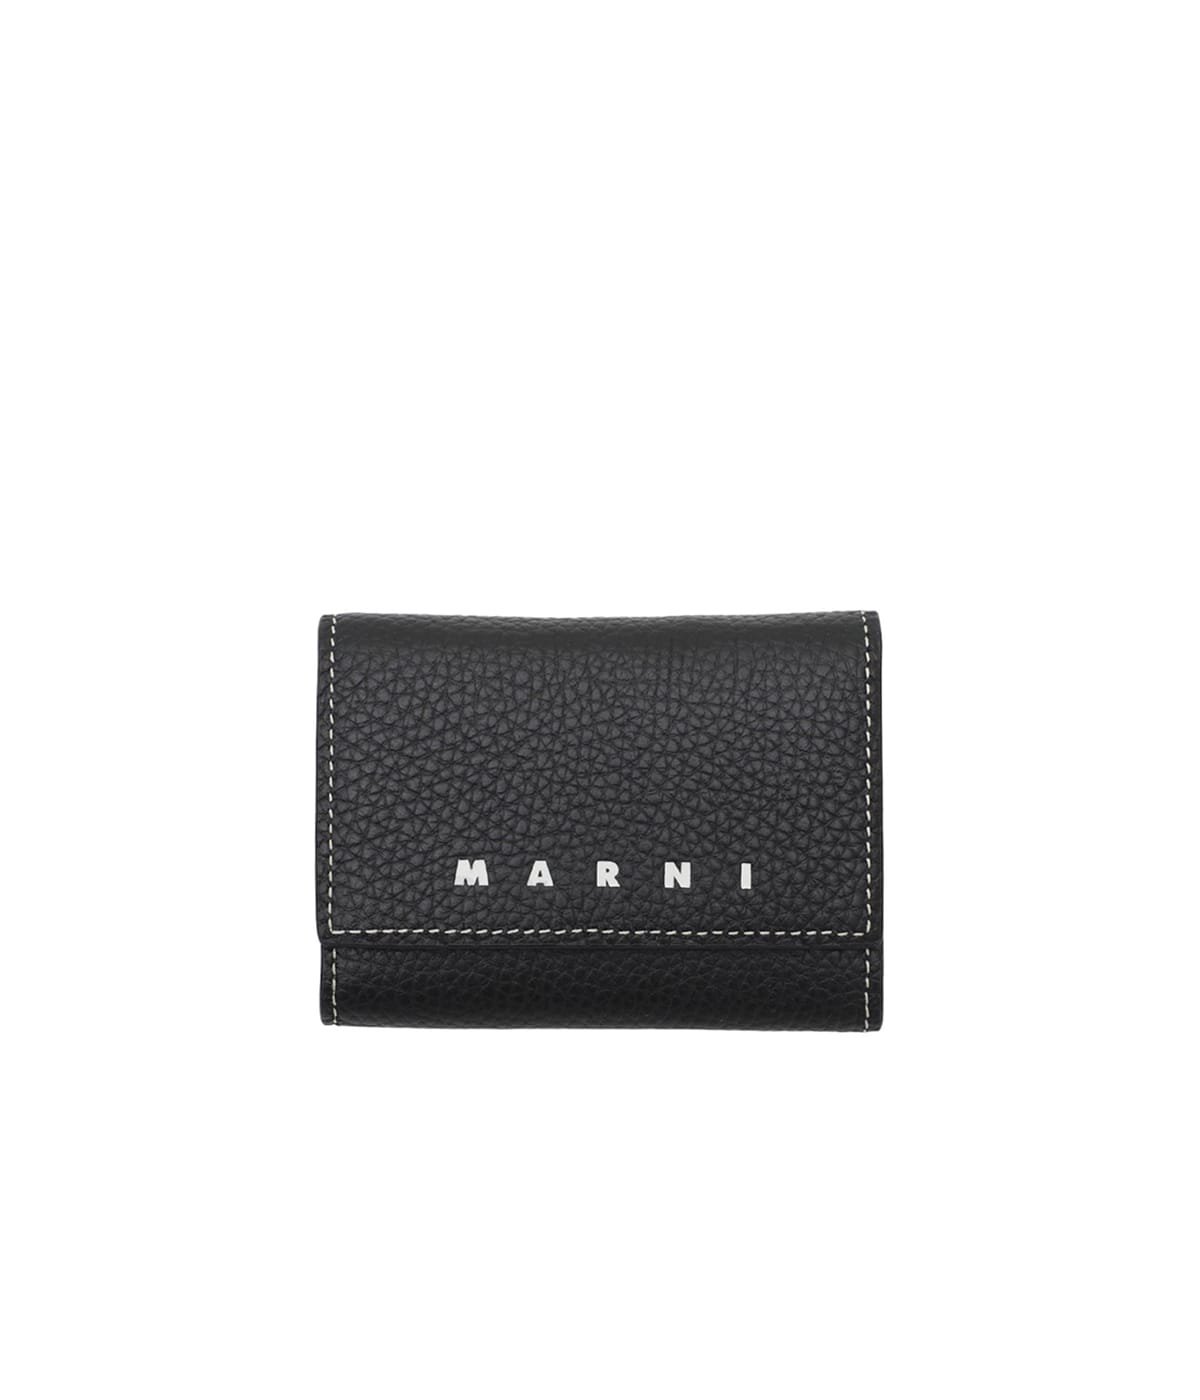 【新品未使用】MARNI レザーキーケースブラック レザー製 キーウォレット¥60500